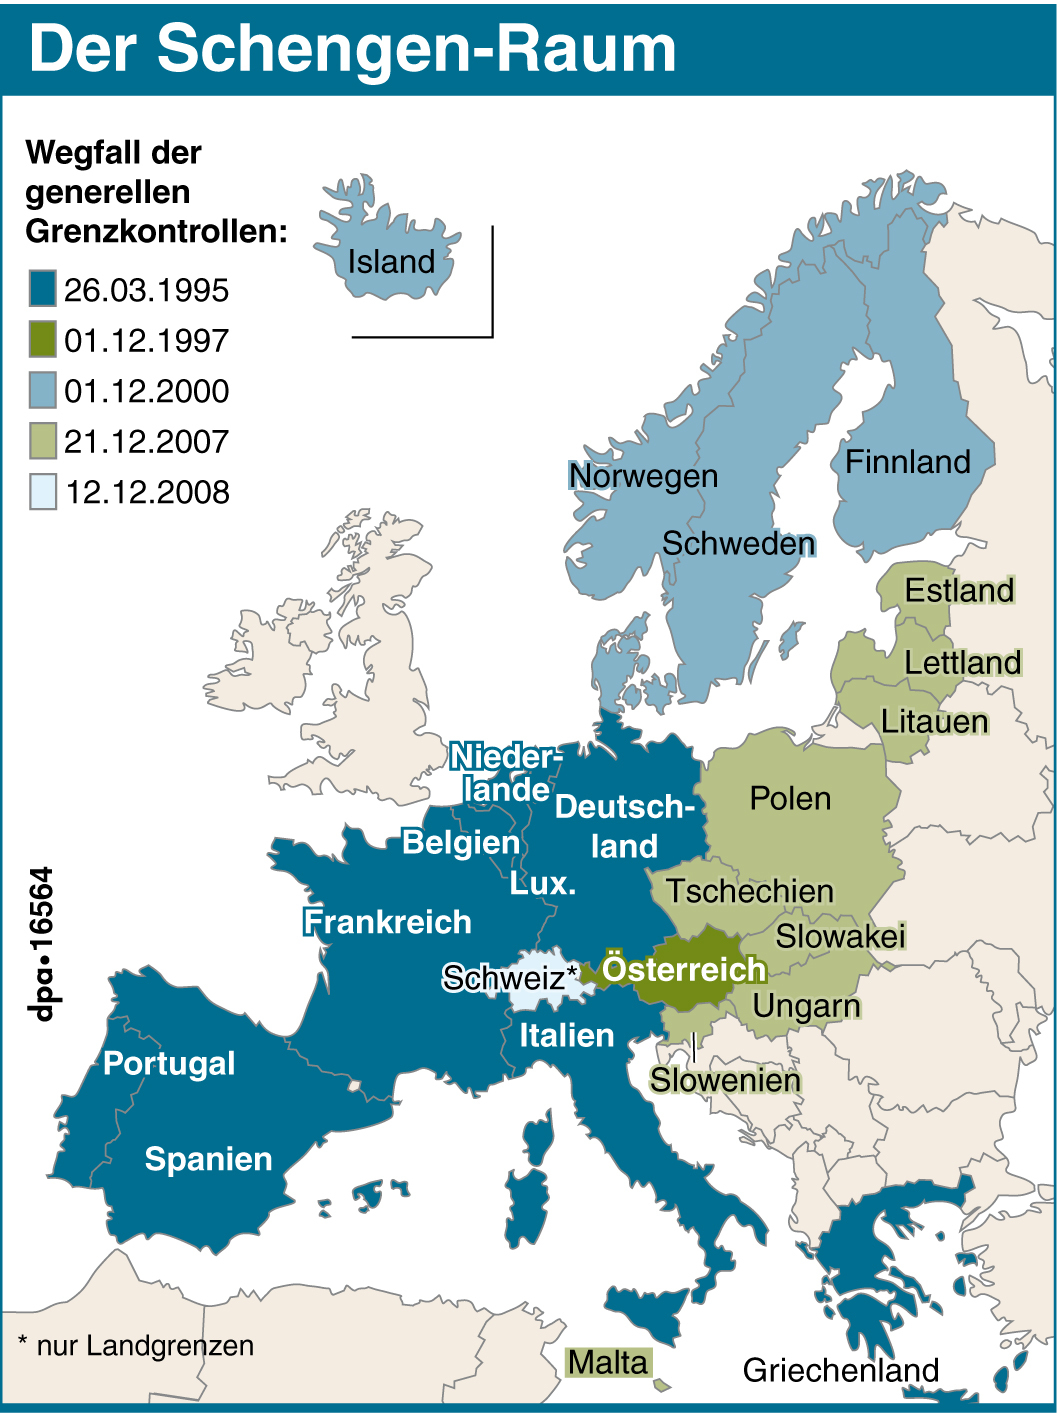 Mitglieder des Schengen-Abkommens: Grenzkontrollen weitgehend abgeschafft Foto: picture-alliance/ dpa-infografik | dpa-infografik Feaser in der Verantwortung